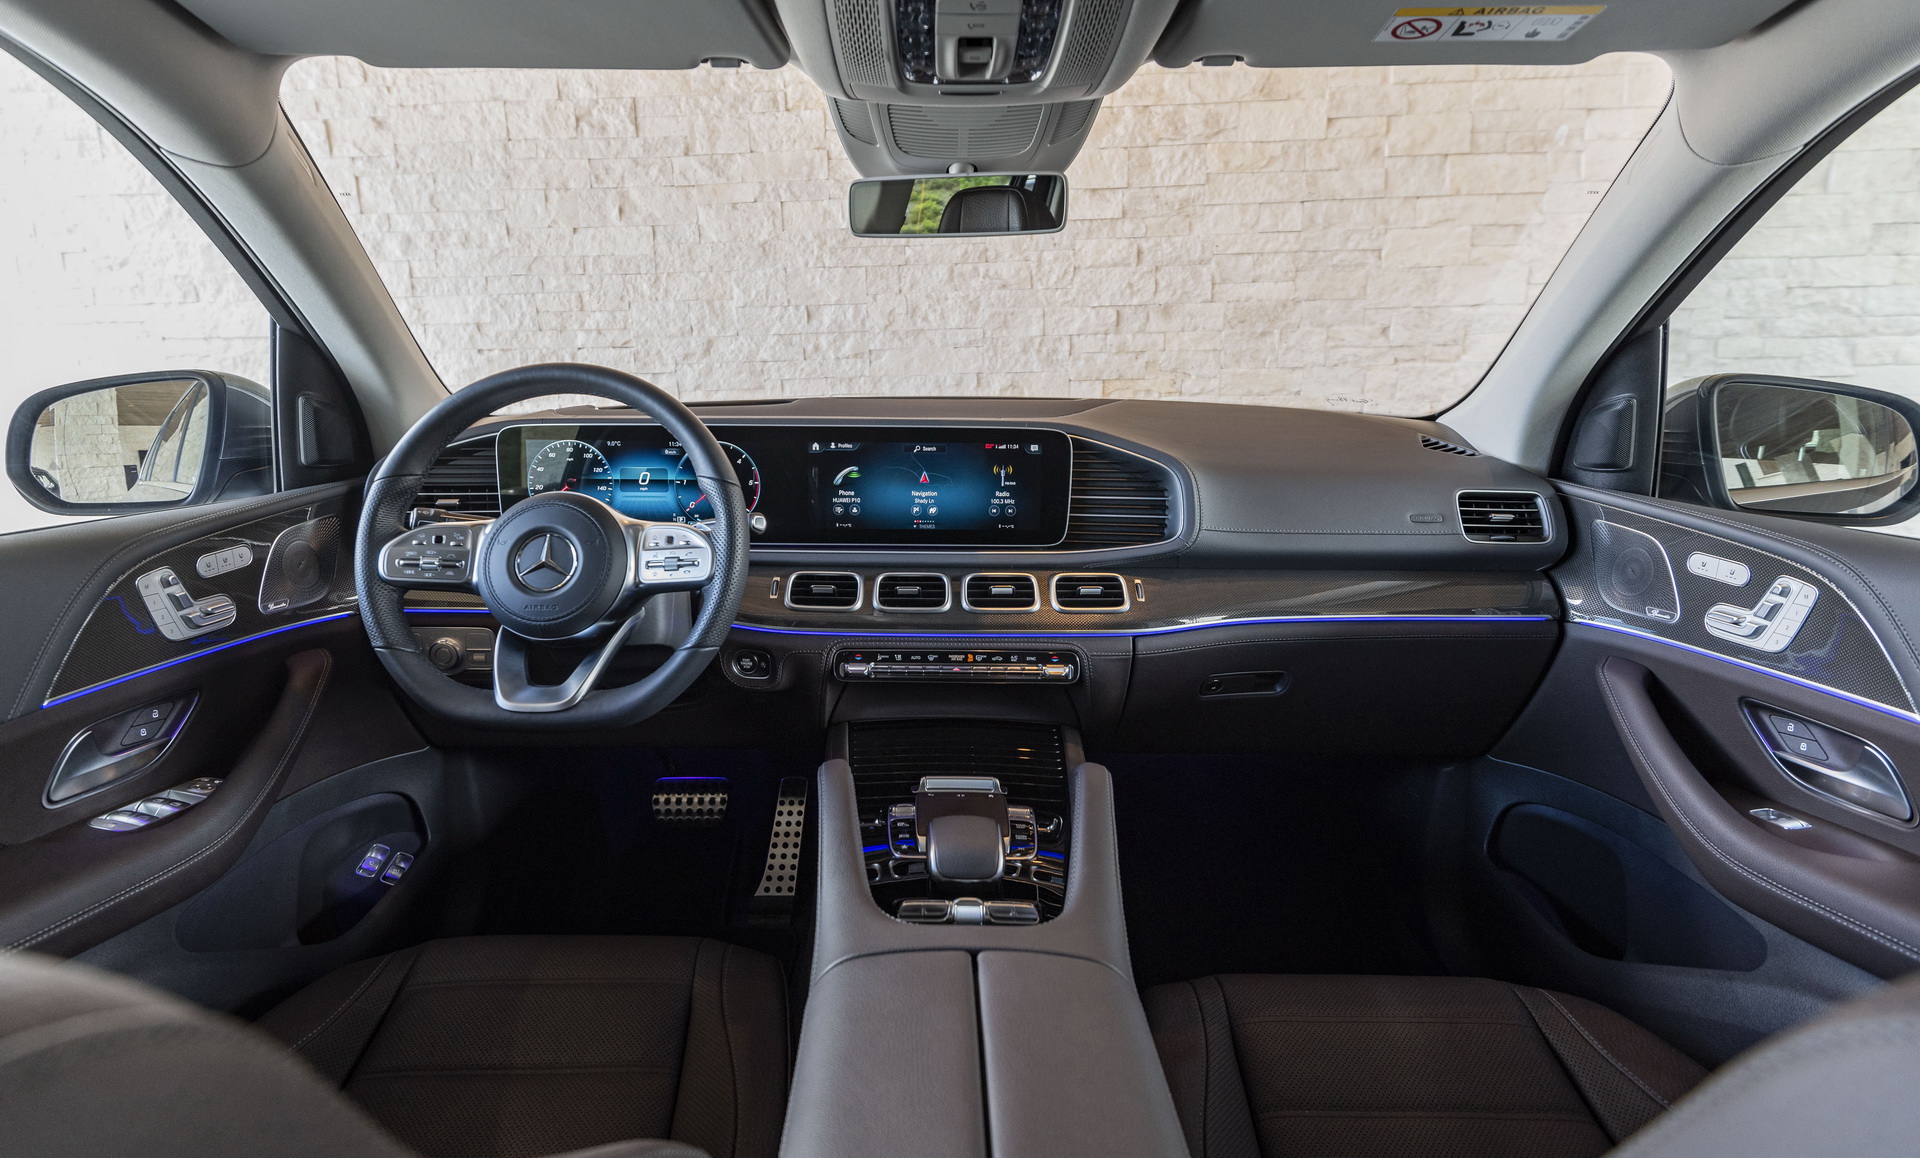 So kè BMW X7 vs Mercedes GLS cùng 3 mẫu SUV full-size hấp dẫn giới nhà giàu - Ảnh 12.